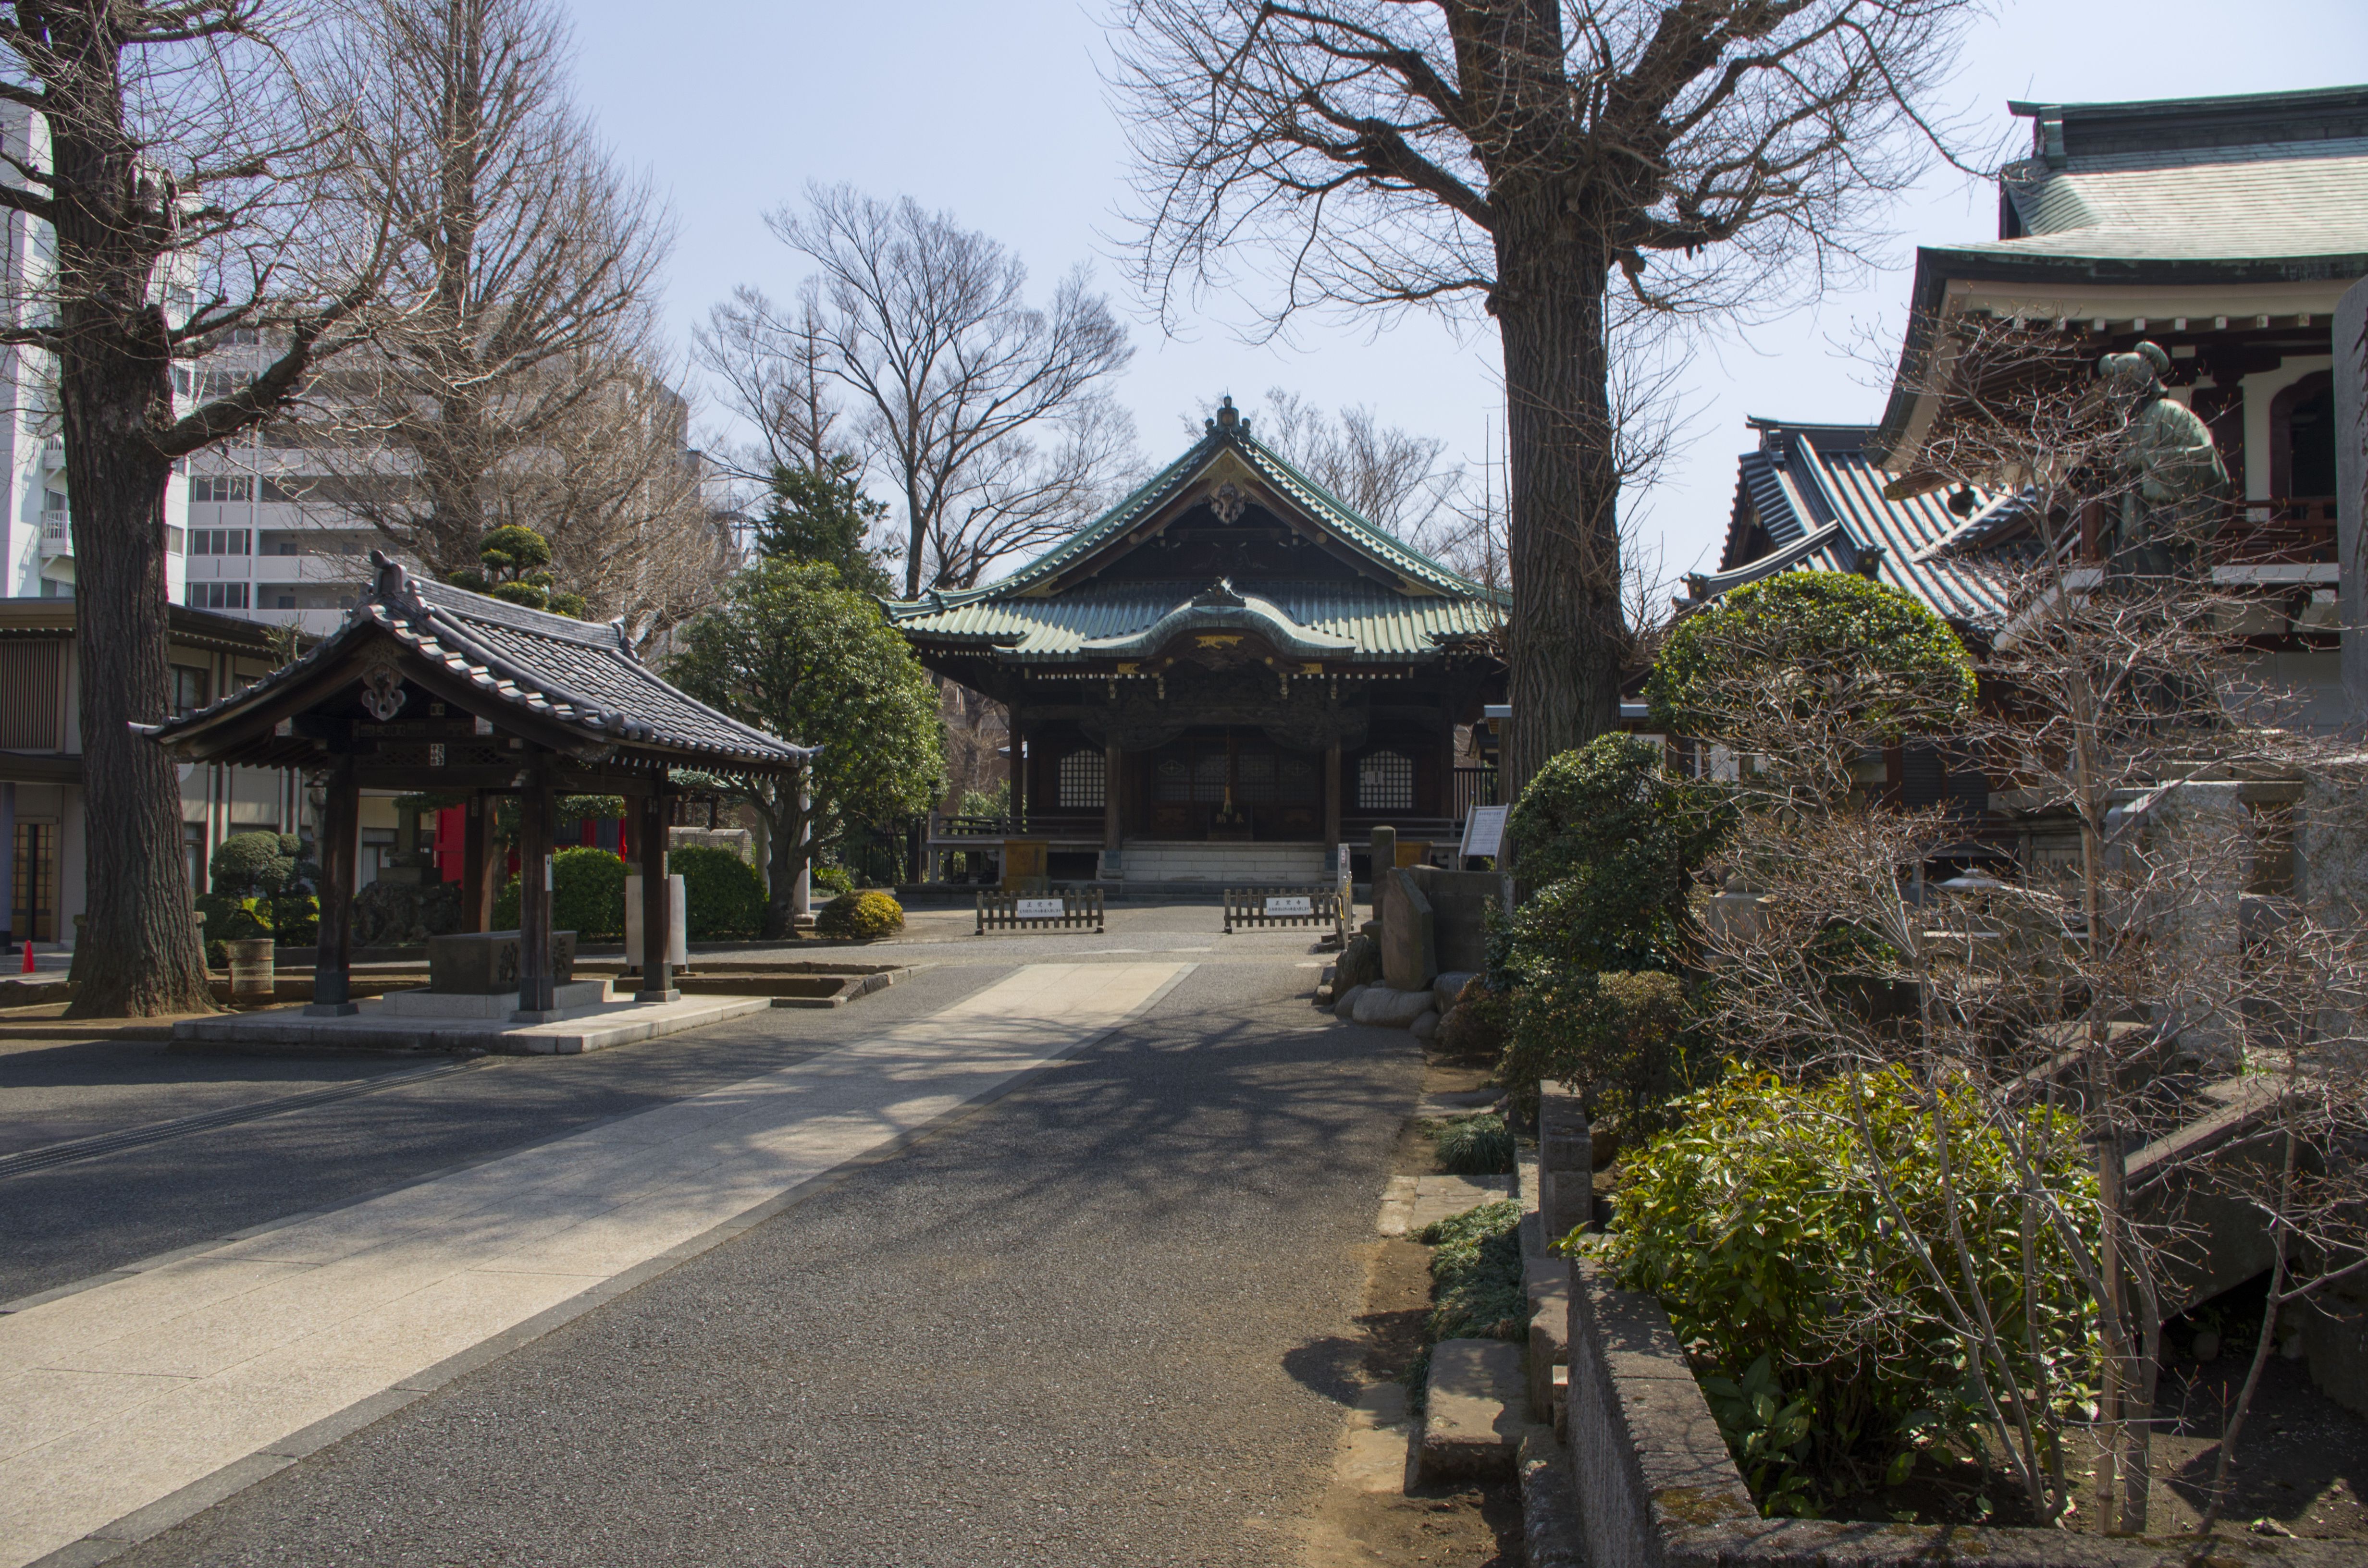 Some shrine close to Meguro station